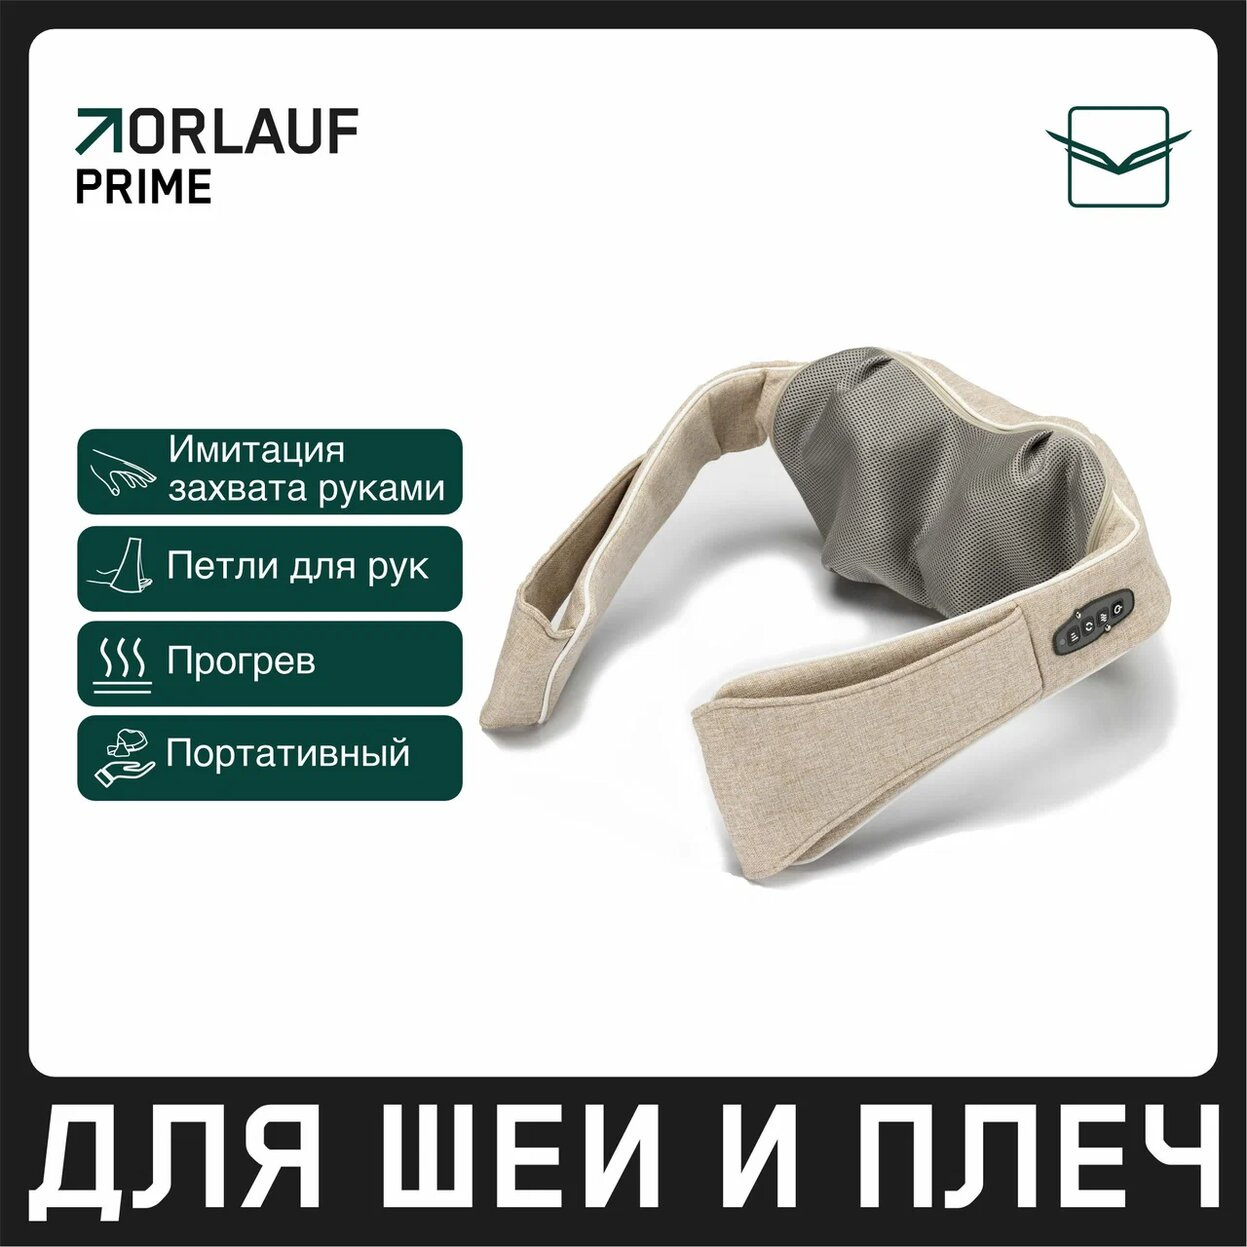 Orlauf Prime из каталога портативных массажеров в Тольятти по цене 11900 ₽